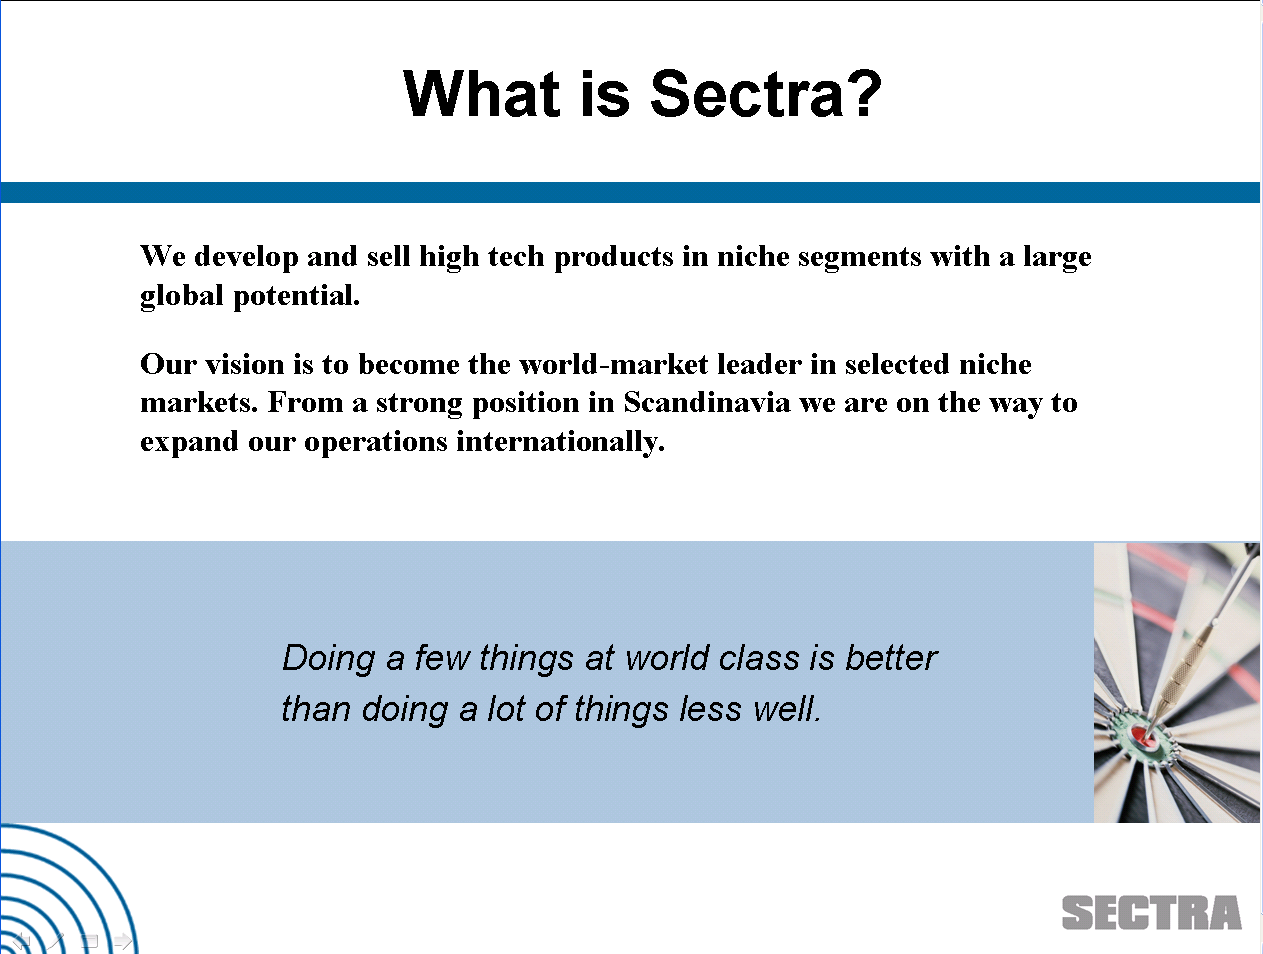 Hva er Sectra? * Grunnlagt i 1978 * Utvikling og salg av høyteknologiske produkter innen ekspansive nisjer.